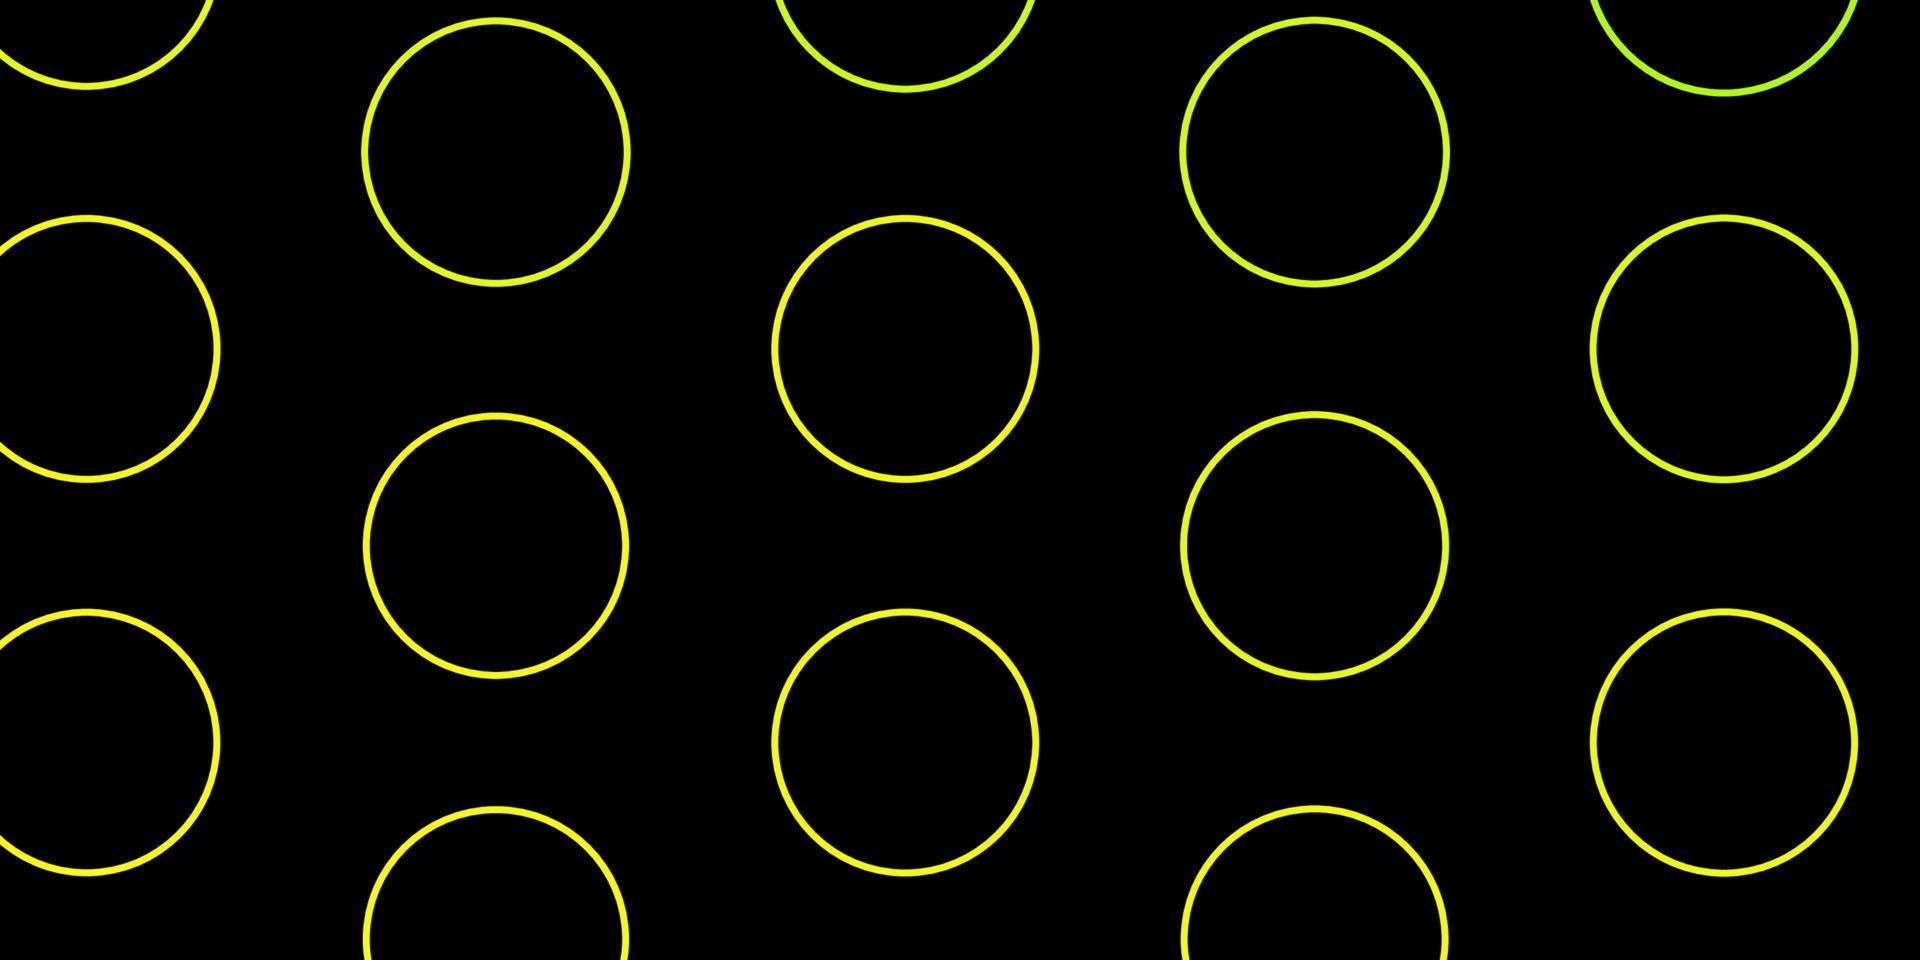 padrão de vetor verde e amarelo escuro com círculos.